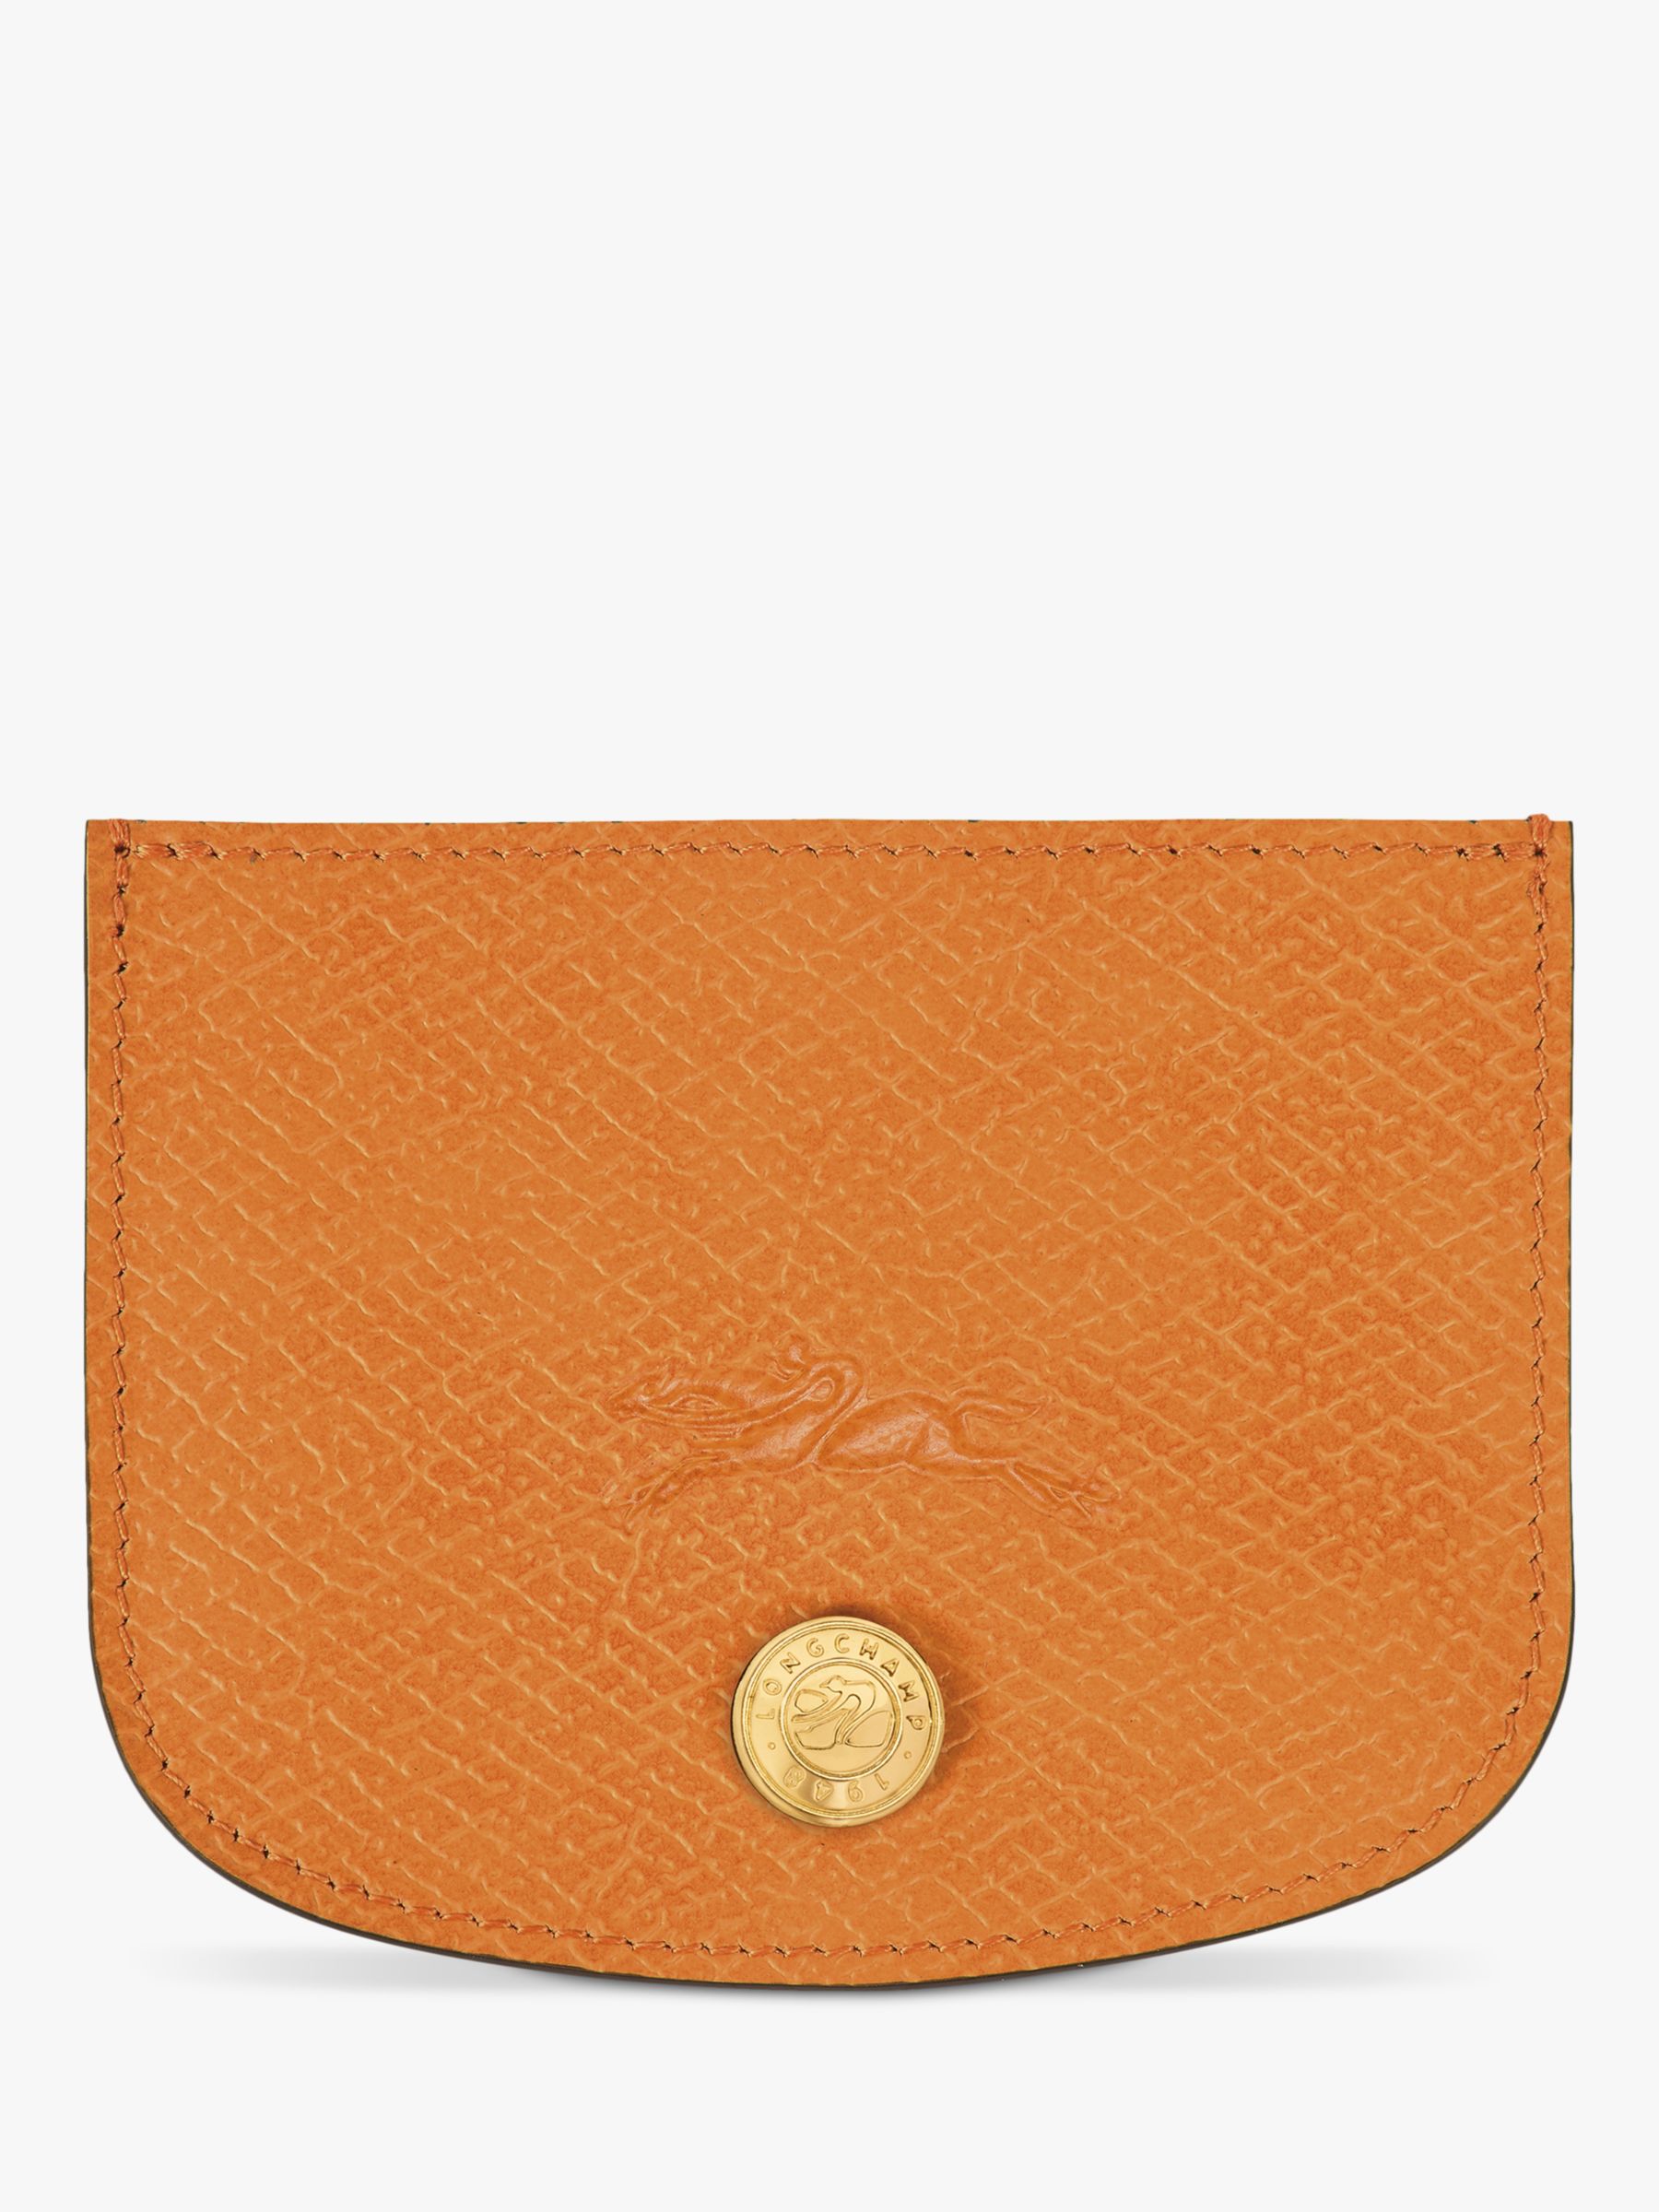 Longchamp Épure Leather Card Holder, Apricot